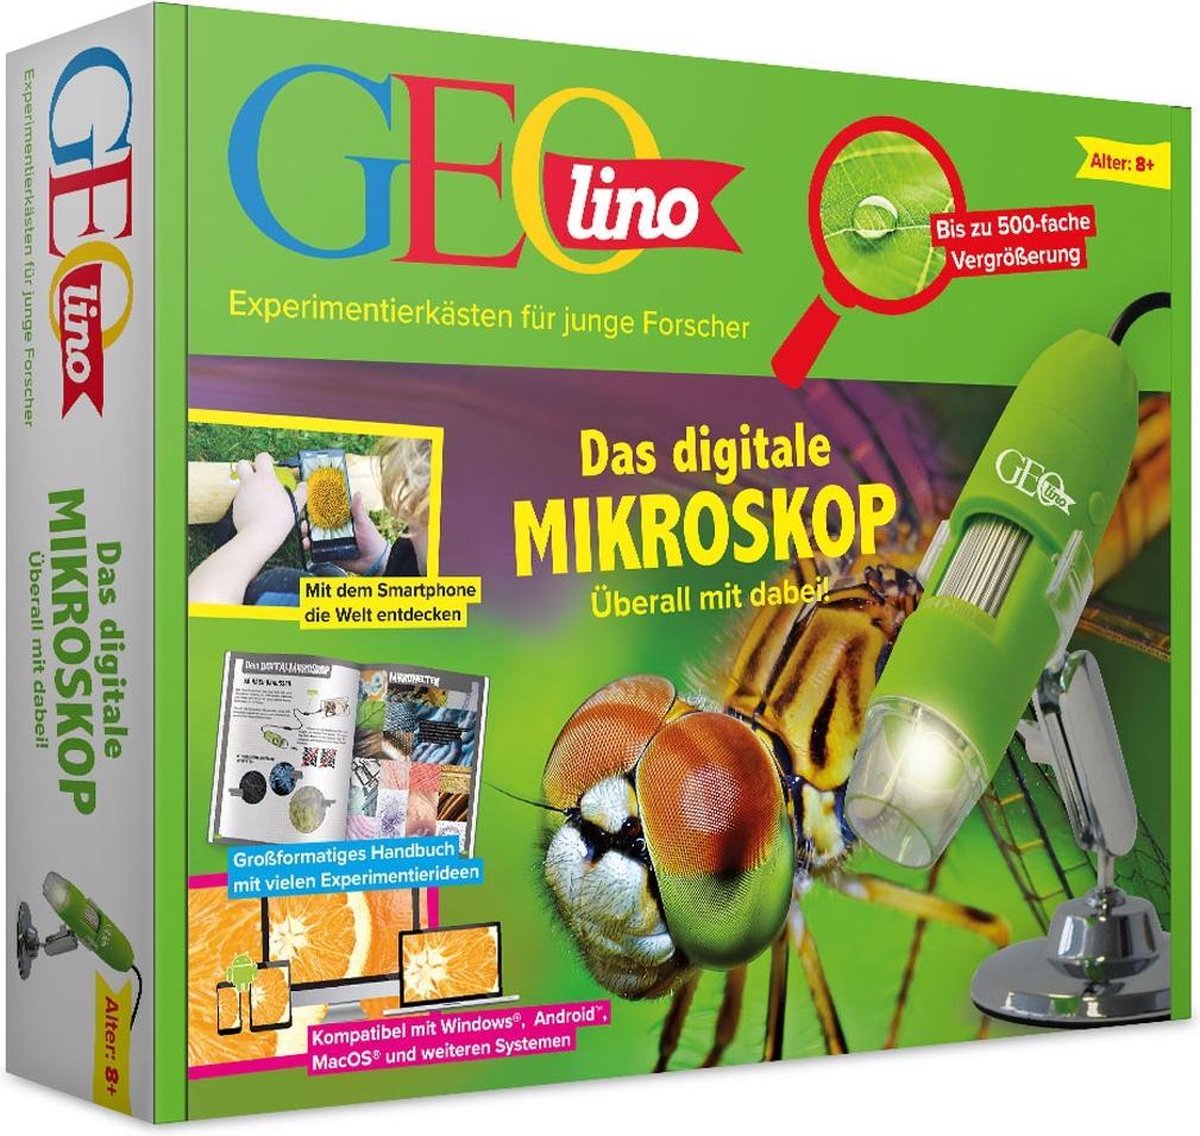 Geolino - Das Digitale Mikroskop